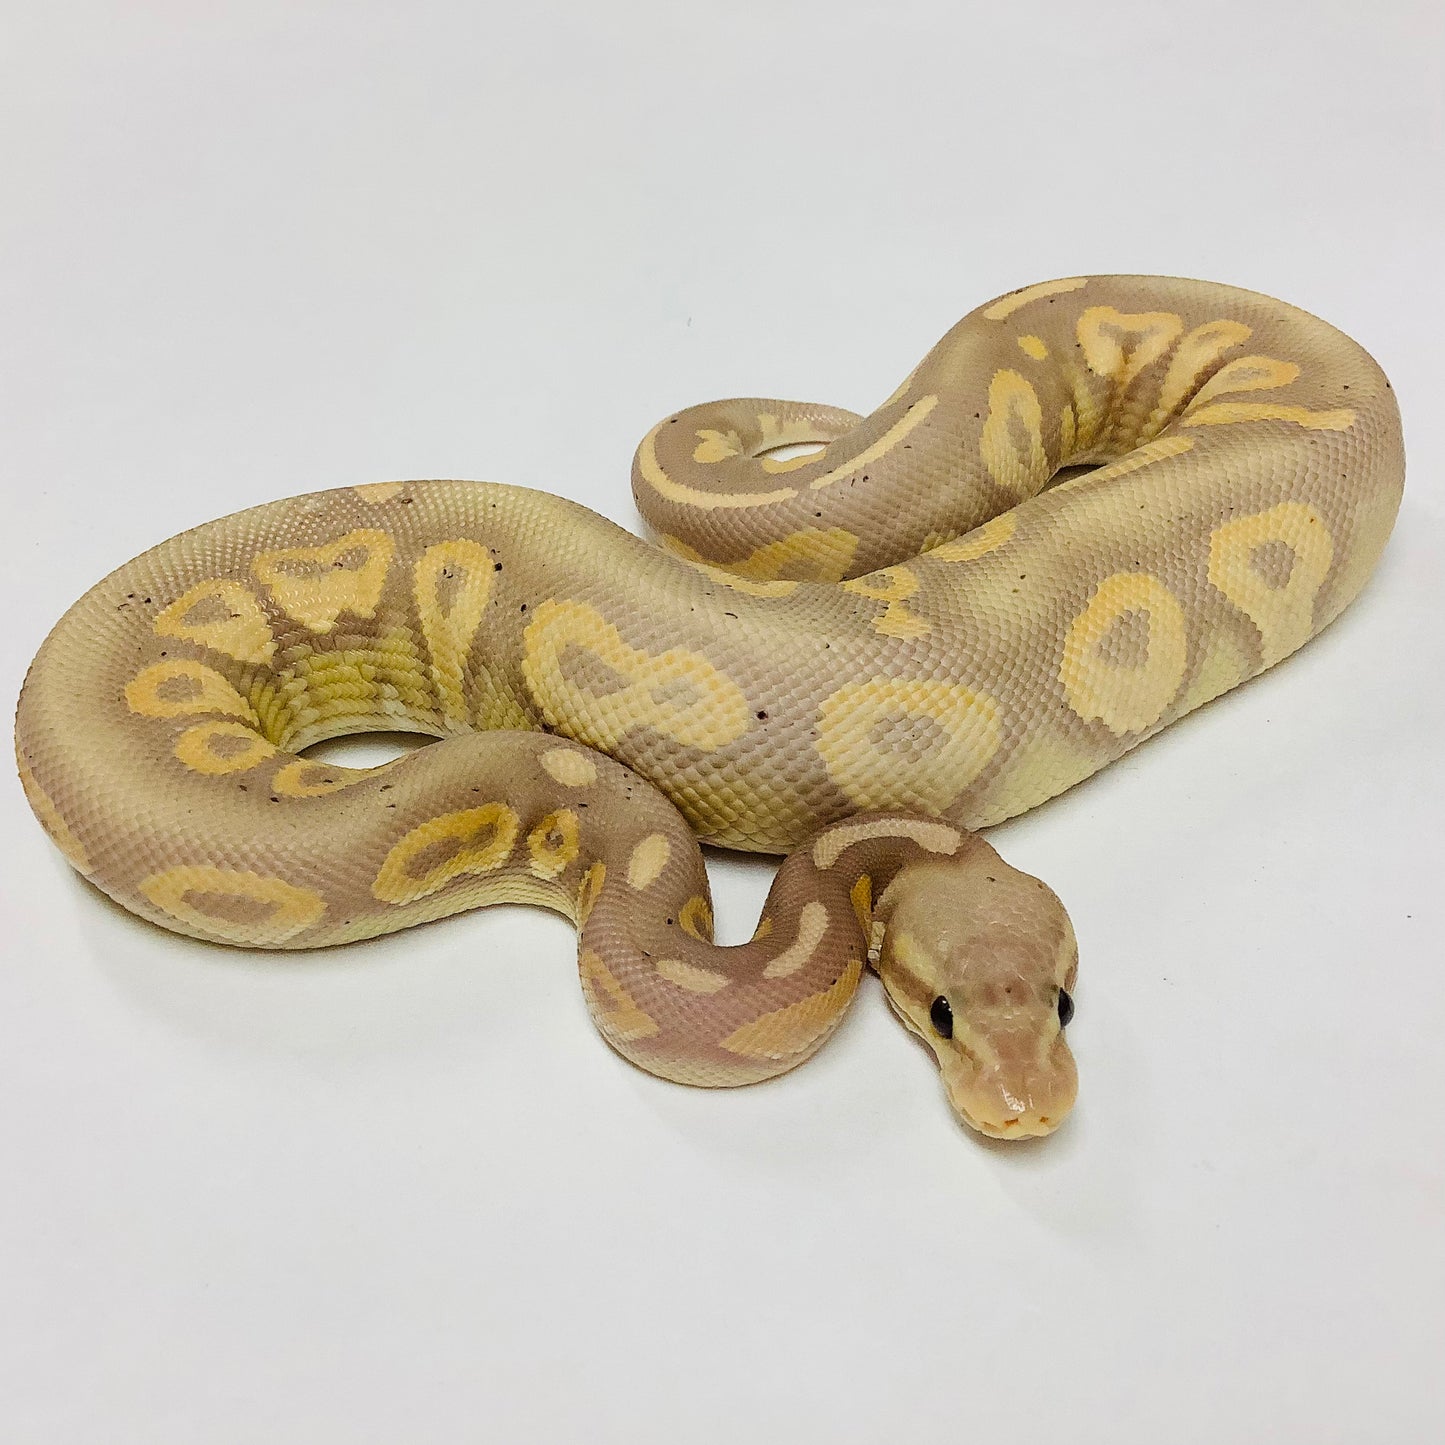 Banana Chocolate Cinnamon Ball Python - Male #2021M02-1